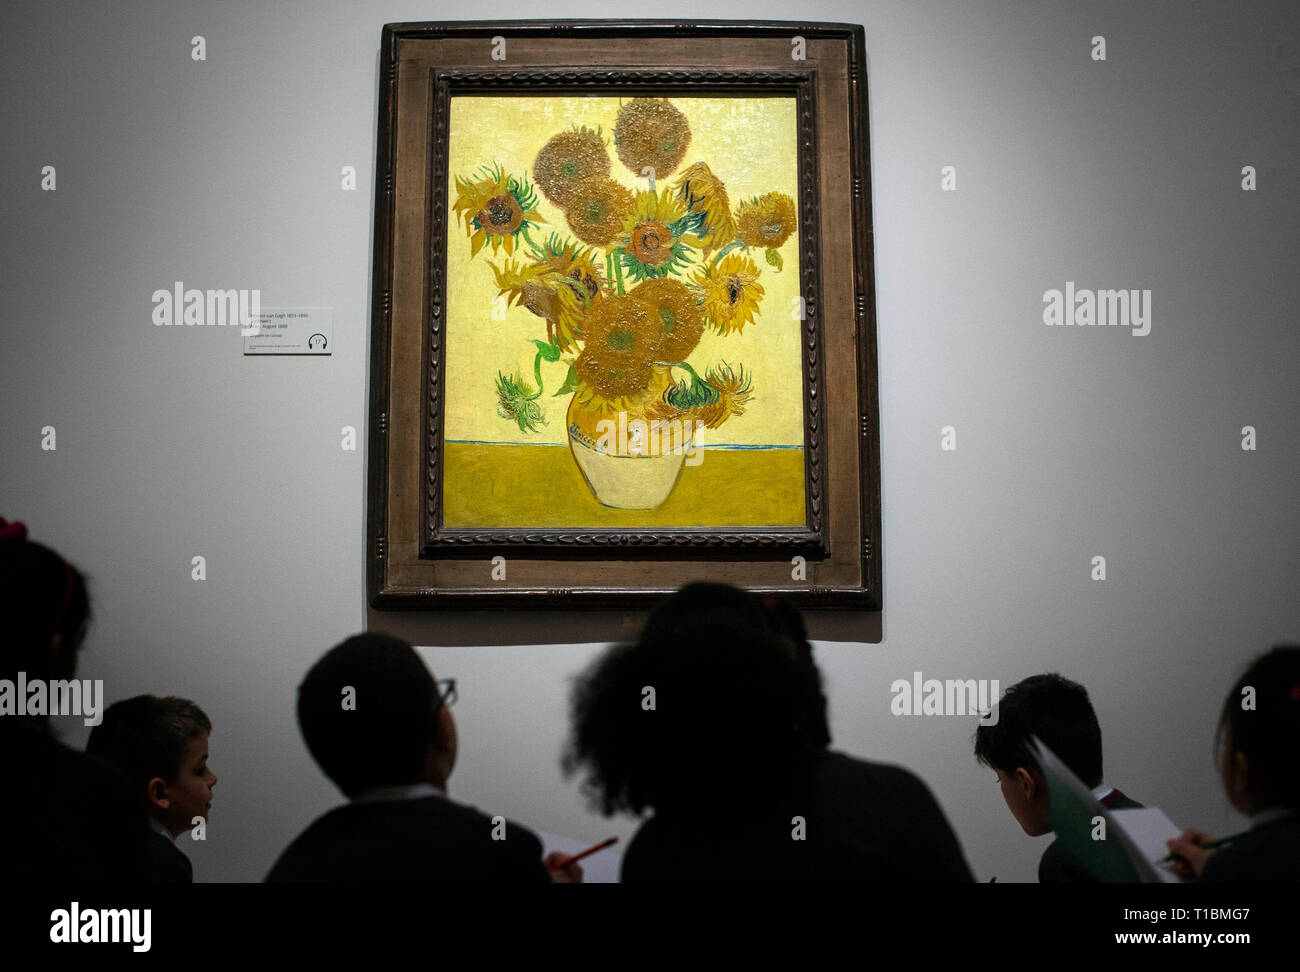 Les enfants de l'école examiner 'Sunflowers" (1888) de Vincent van Gogh au cours de la prévisualisation pour l'EY : exposition Van Gogh et la Grande-Bretagne à la Tate Britain, Londres, qui jette un regard nouveau sur l'artiste à travers sa relation avec la Grande-Bretagne. Banque D'Images